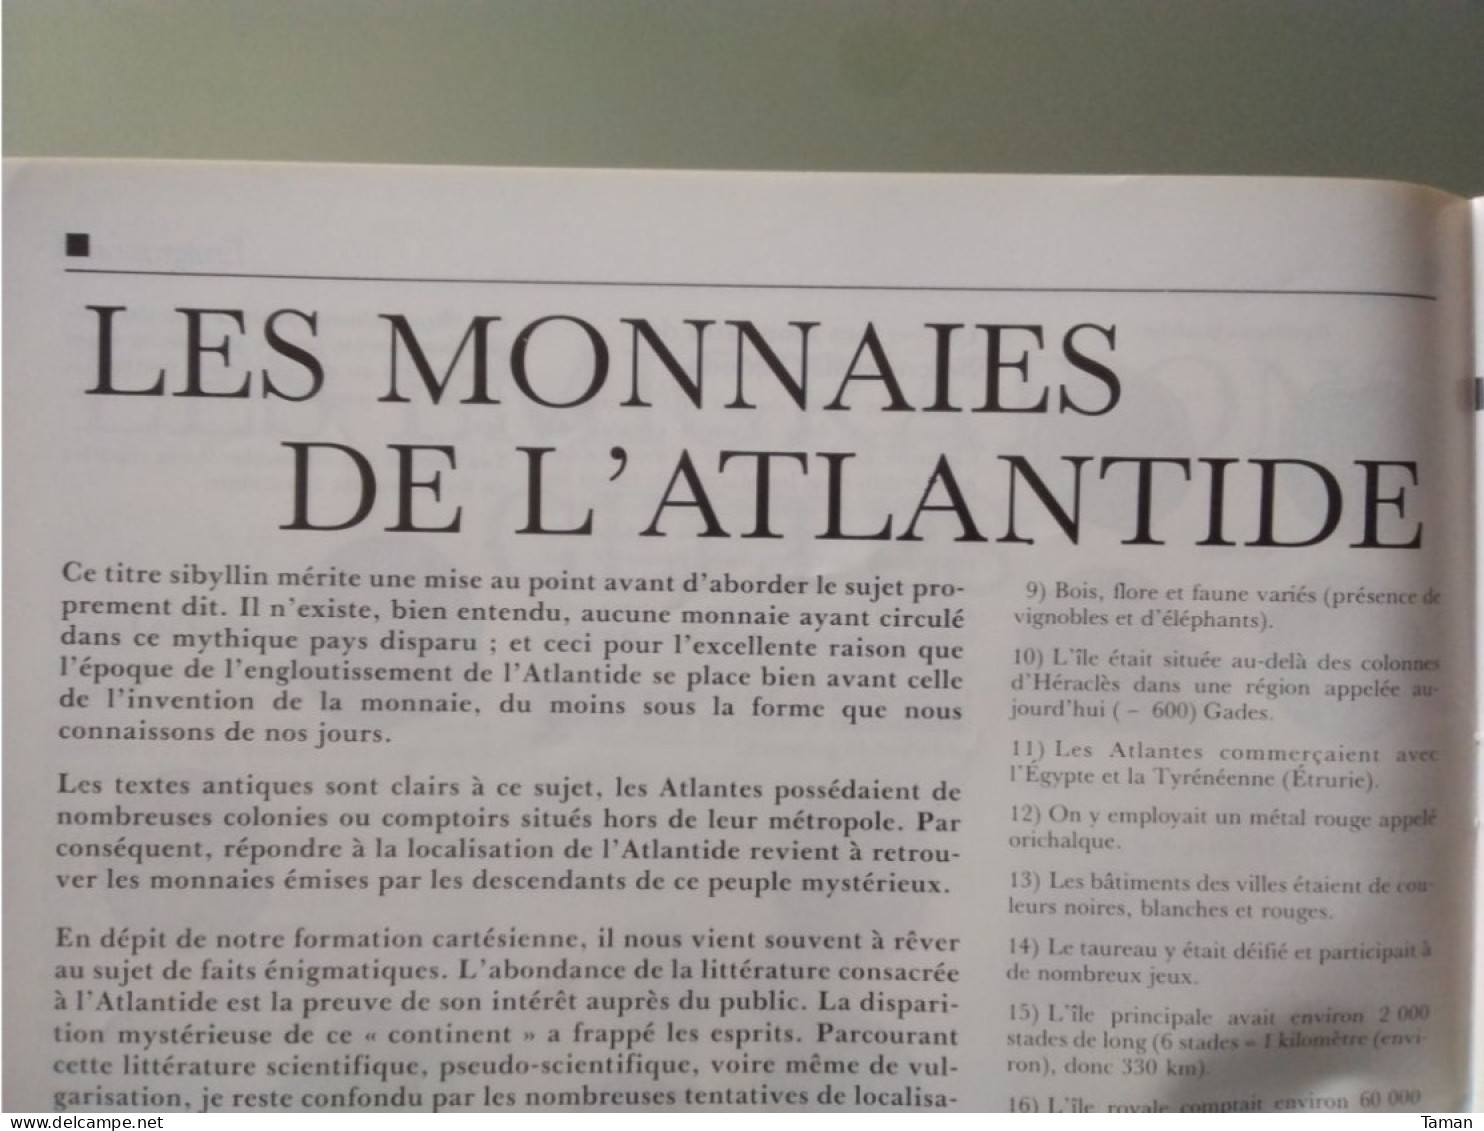 Numismatique & change - Louis XIV - Emigrations celtes - Monnaies Atlantide - Fausses monnaies - Canal de Panama